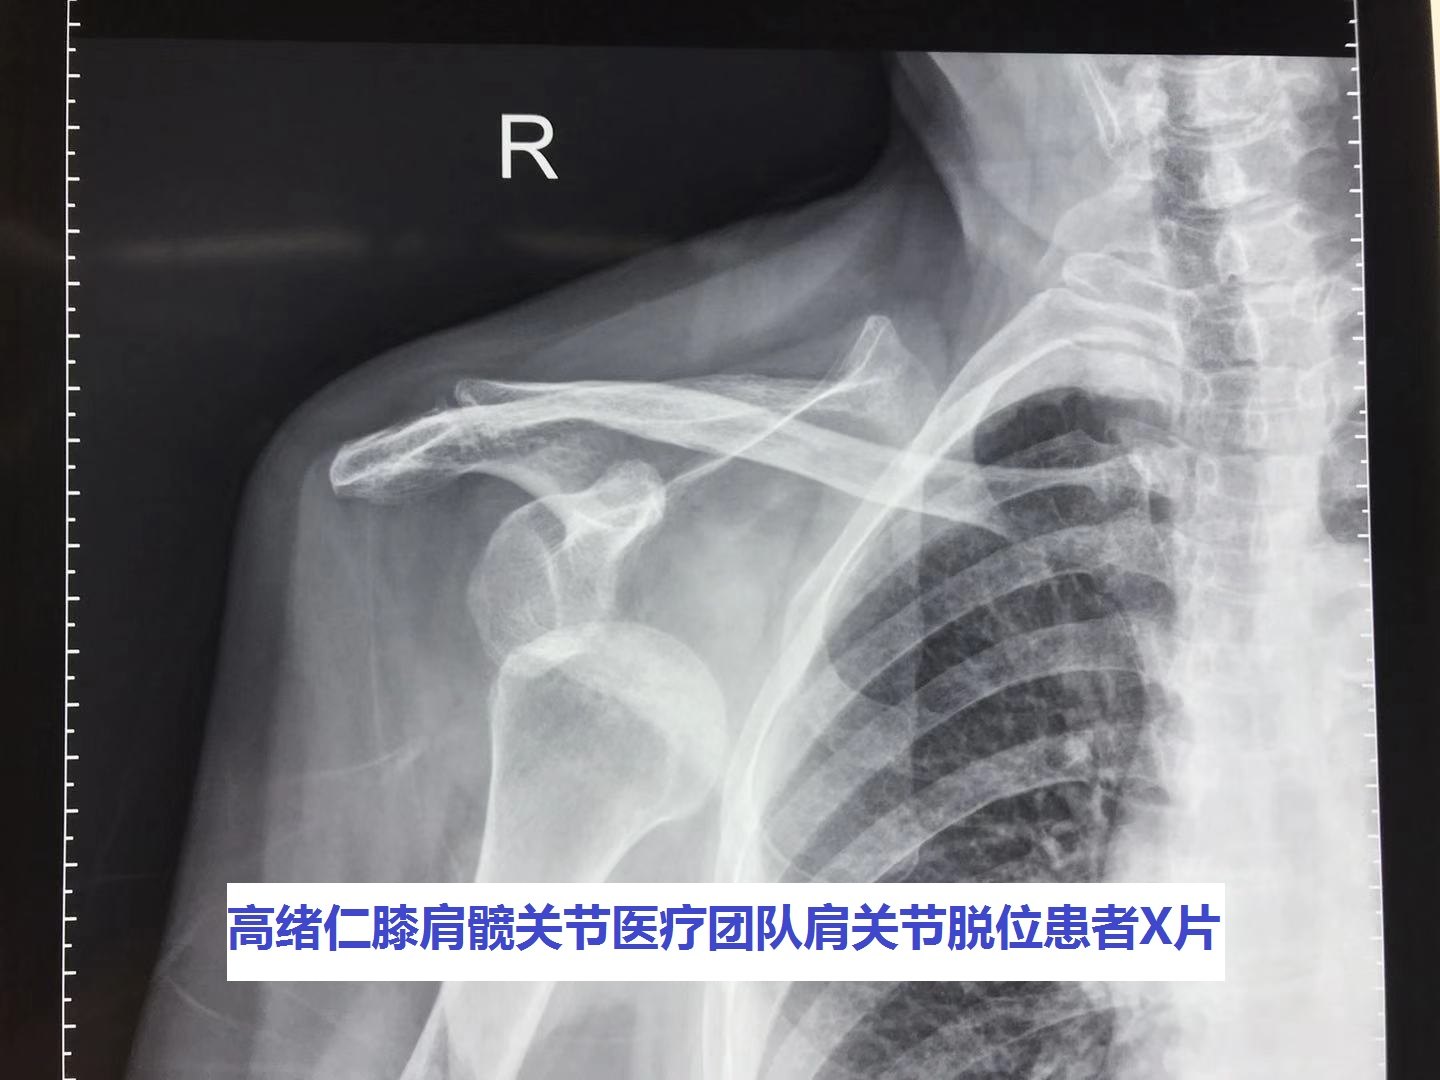 病例14 肩关节脱位-X线读片-医学